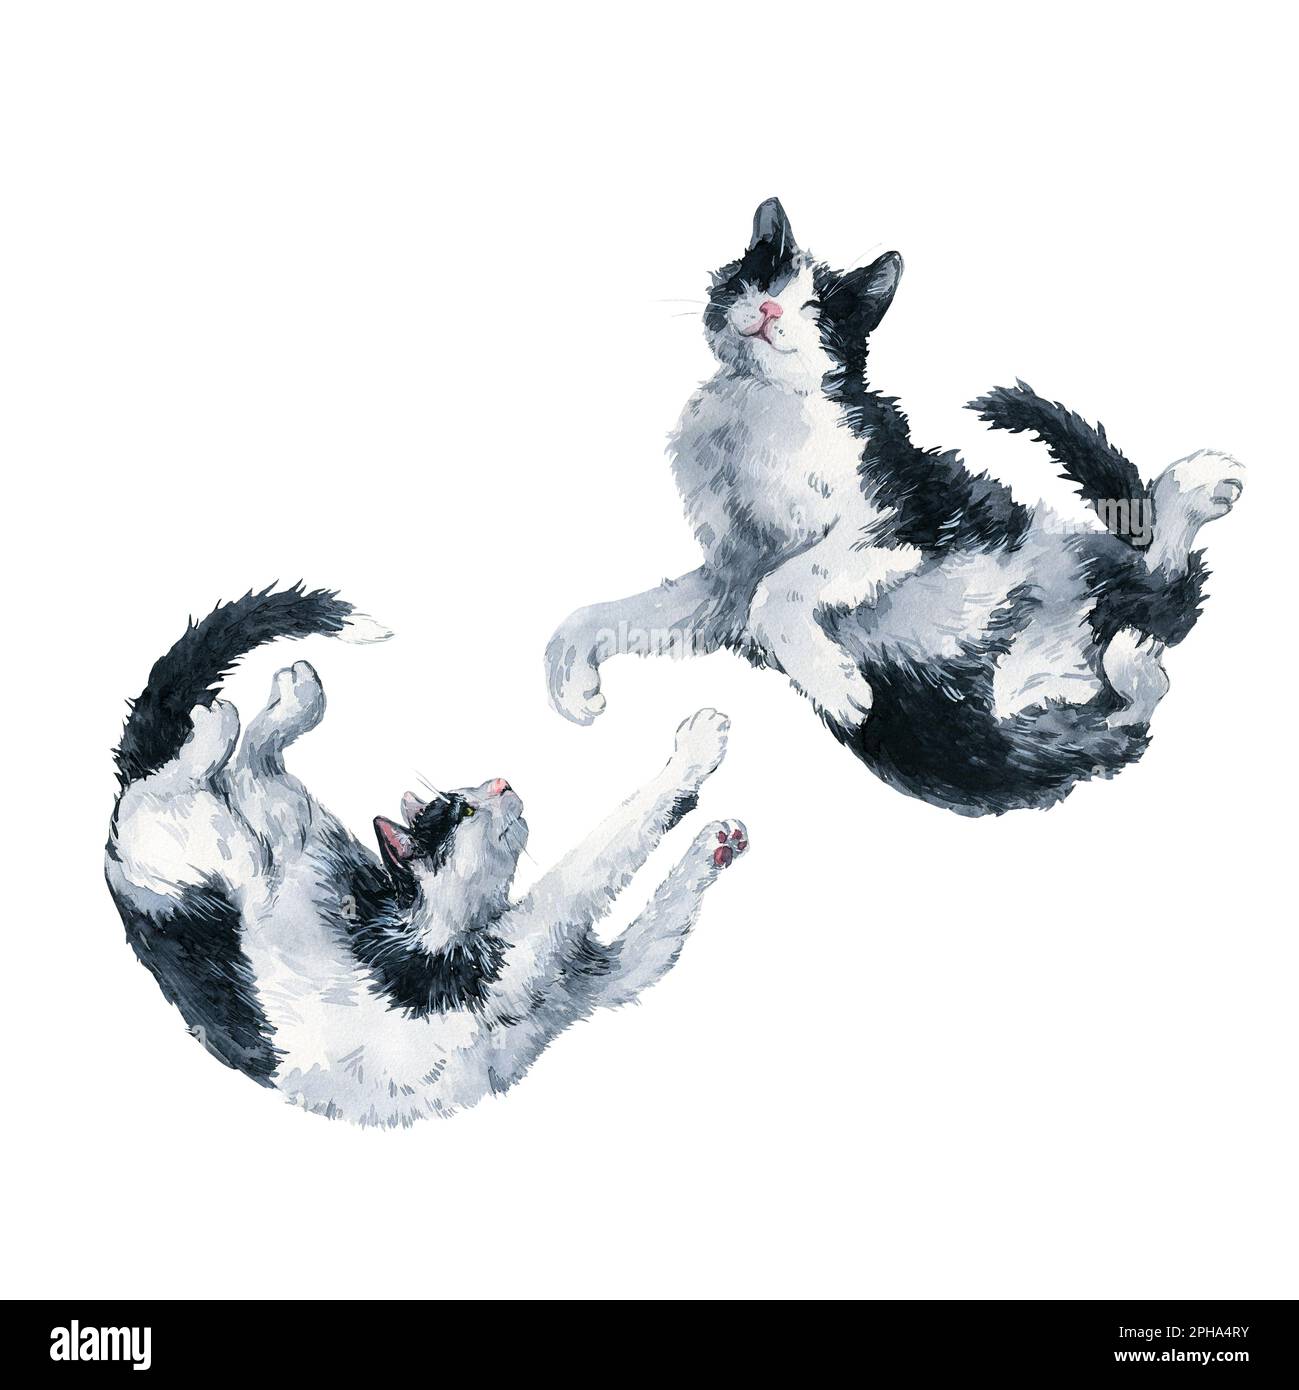 Deux jouant bicolor noir et blanc chats. Masque de peinture aquarelle isolé sur fond blanc. Motif pour tissu, t-shirt, carte postale, accueil Banque D'Images